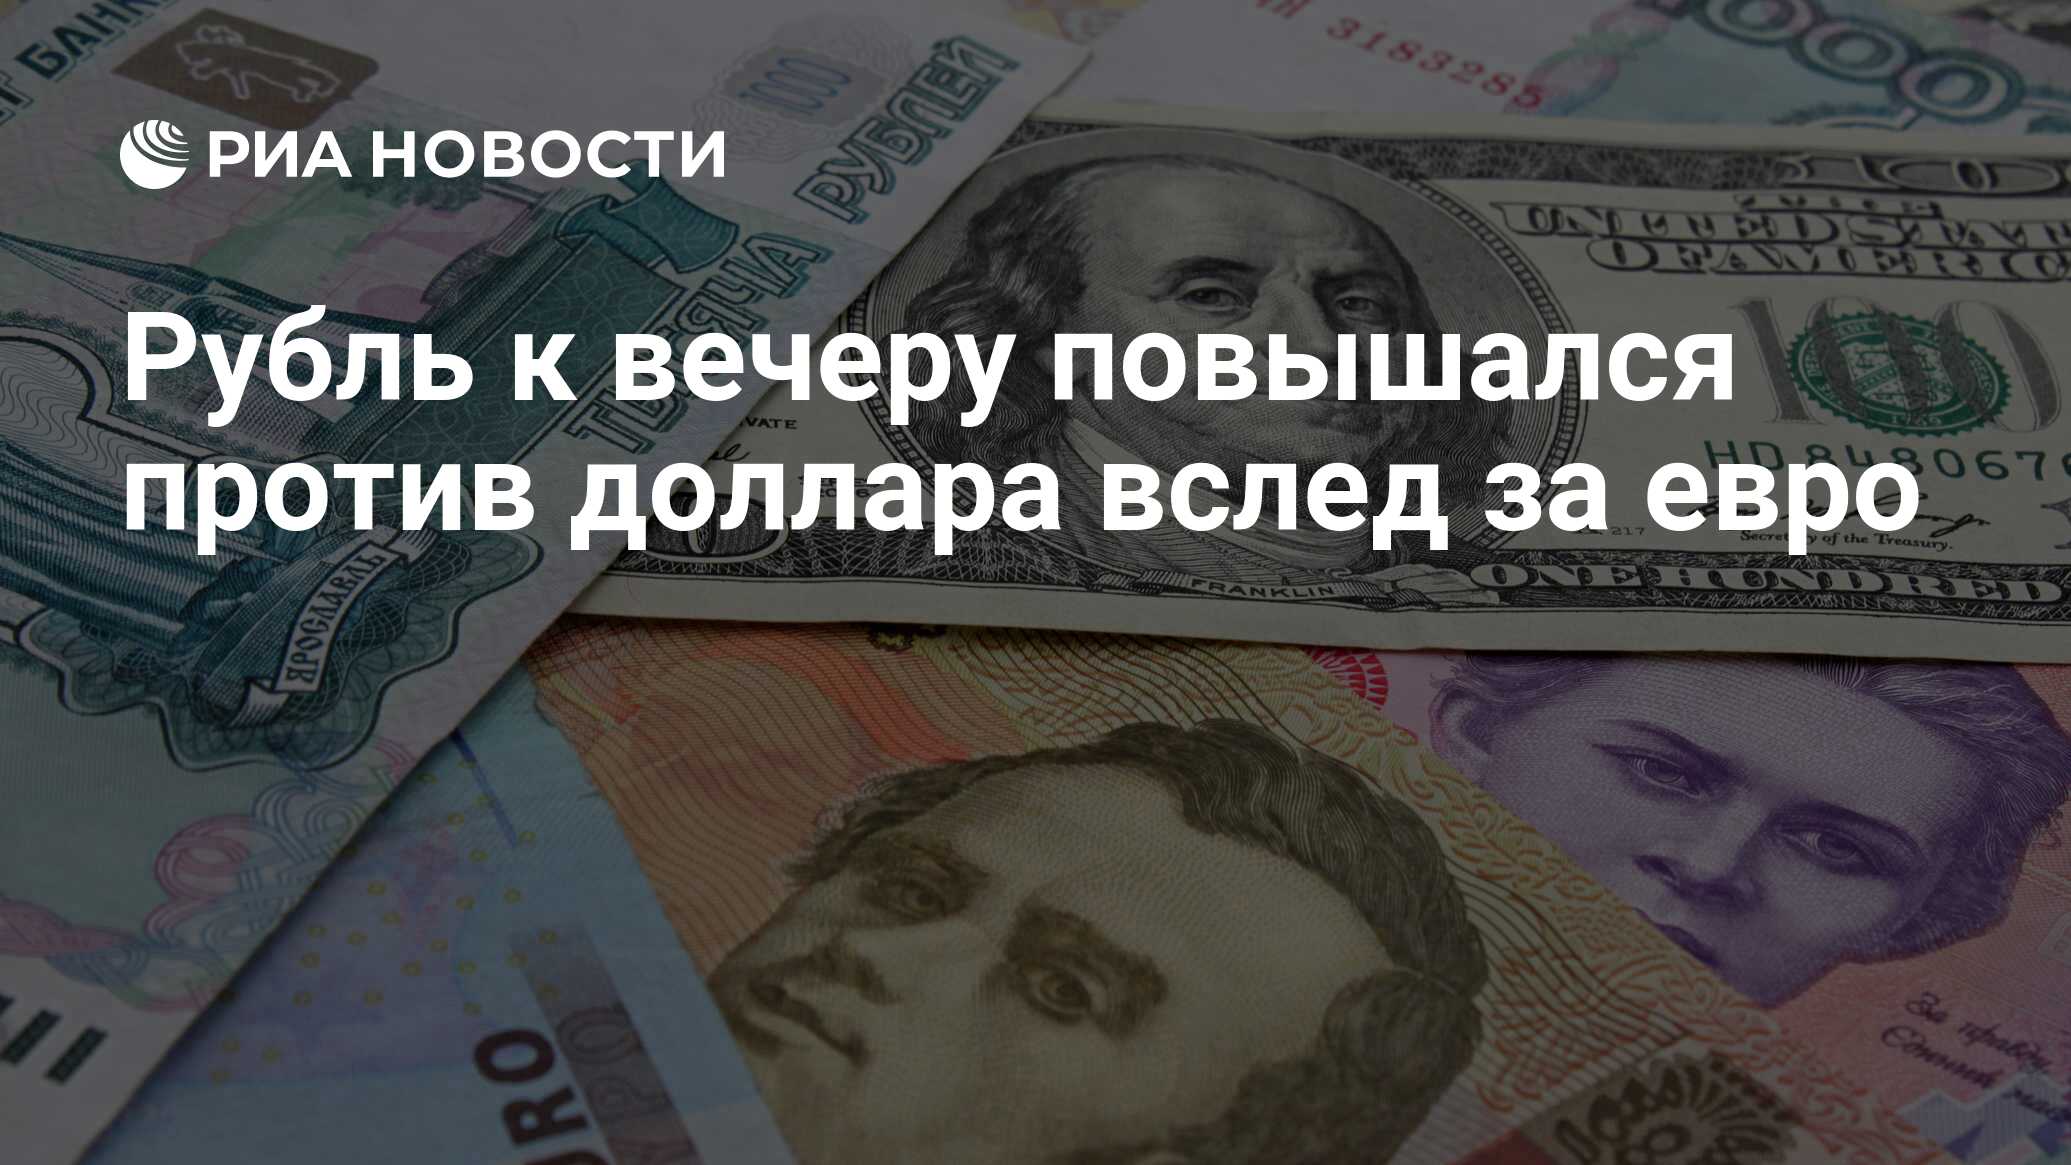 300 рублей в долларах. 80 Евро в рублях. 80000 Долларов в рублях. 60 Тысяч долларов в рублях.